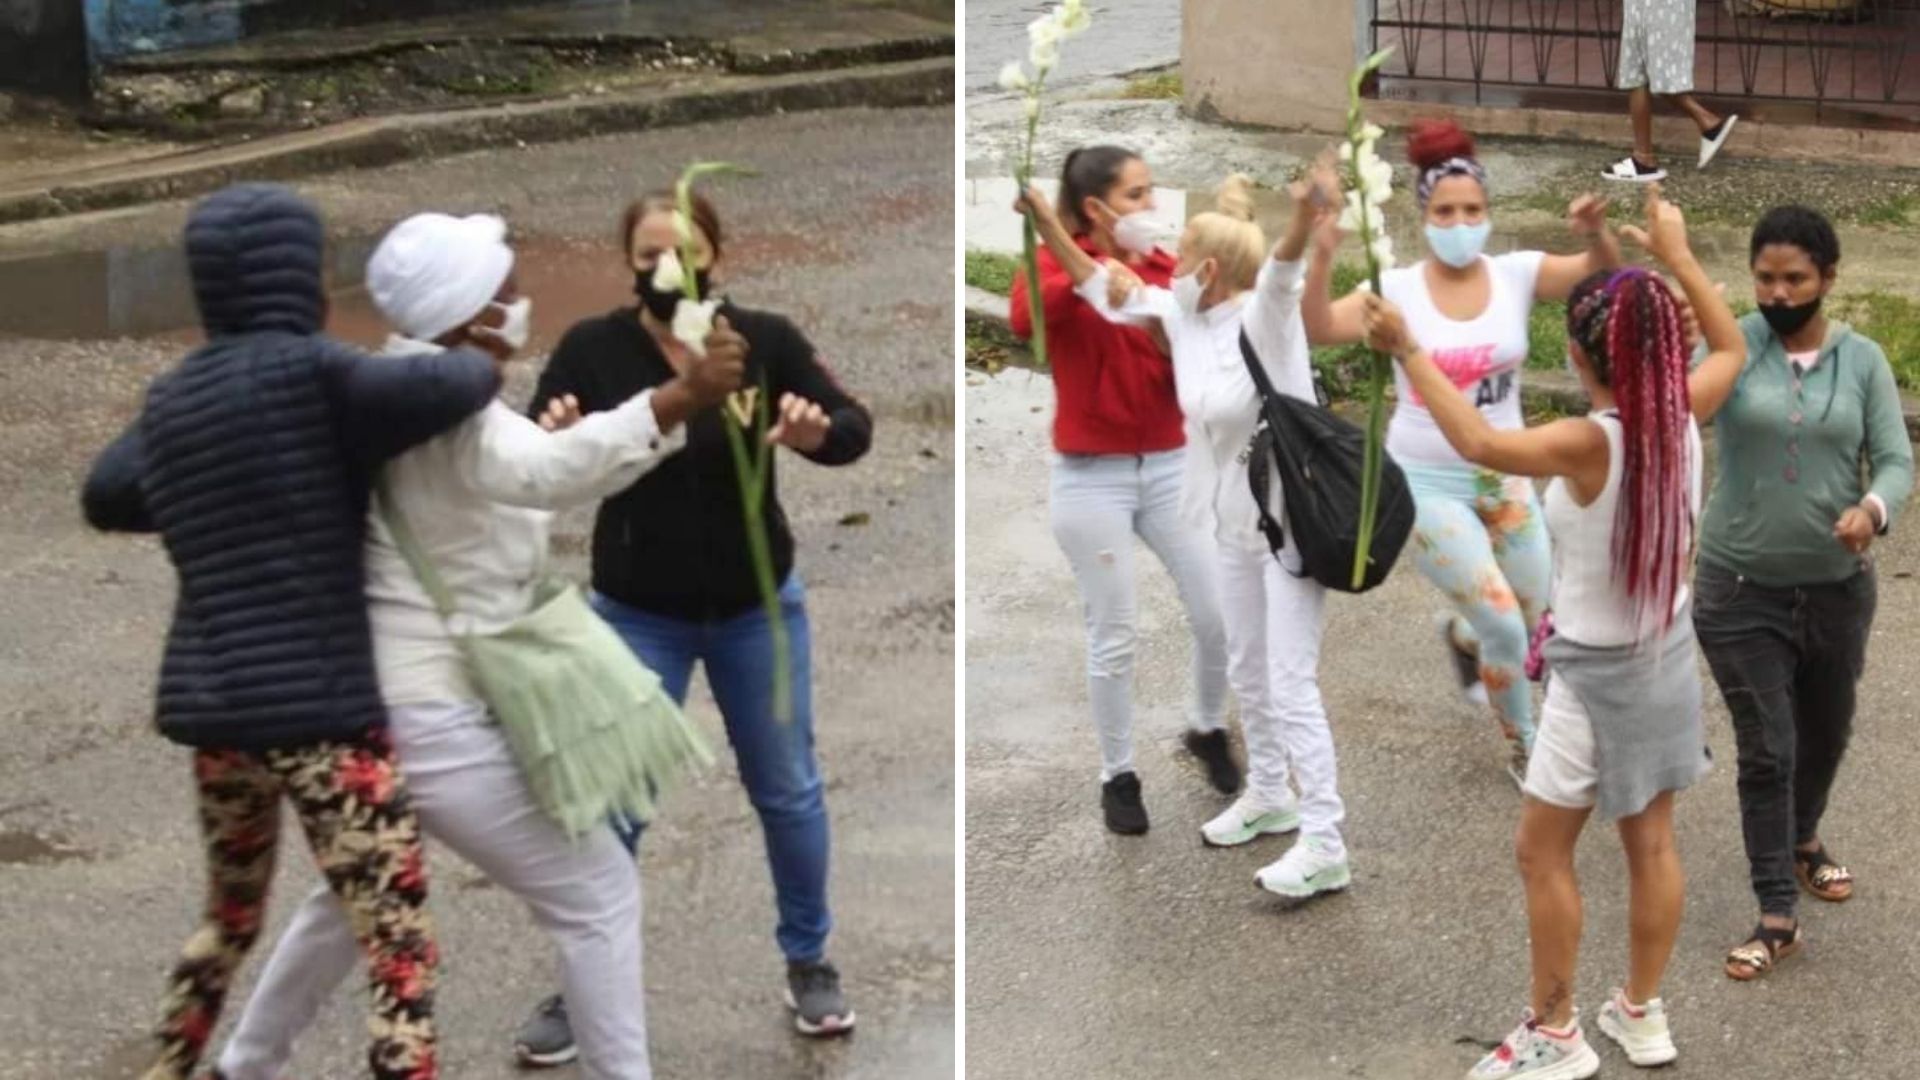 Las activistas cubanas se dirigían a la Iglesia de Santa Rita y fueron reprimidas violentamente por agentes de la Seguridad del Estado